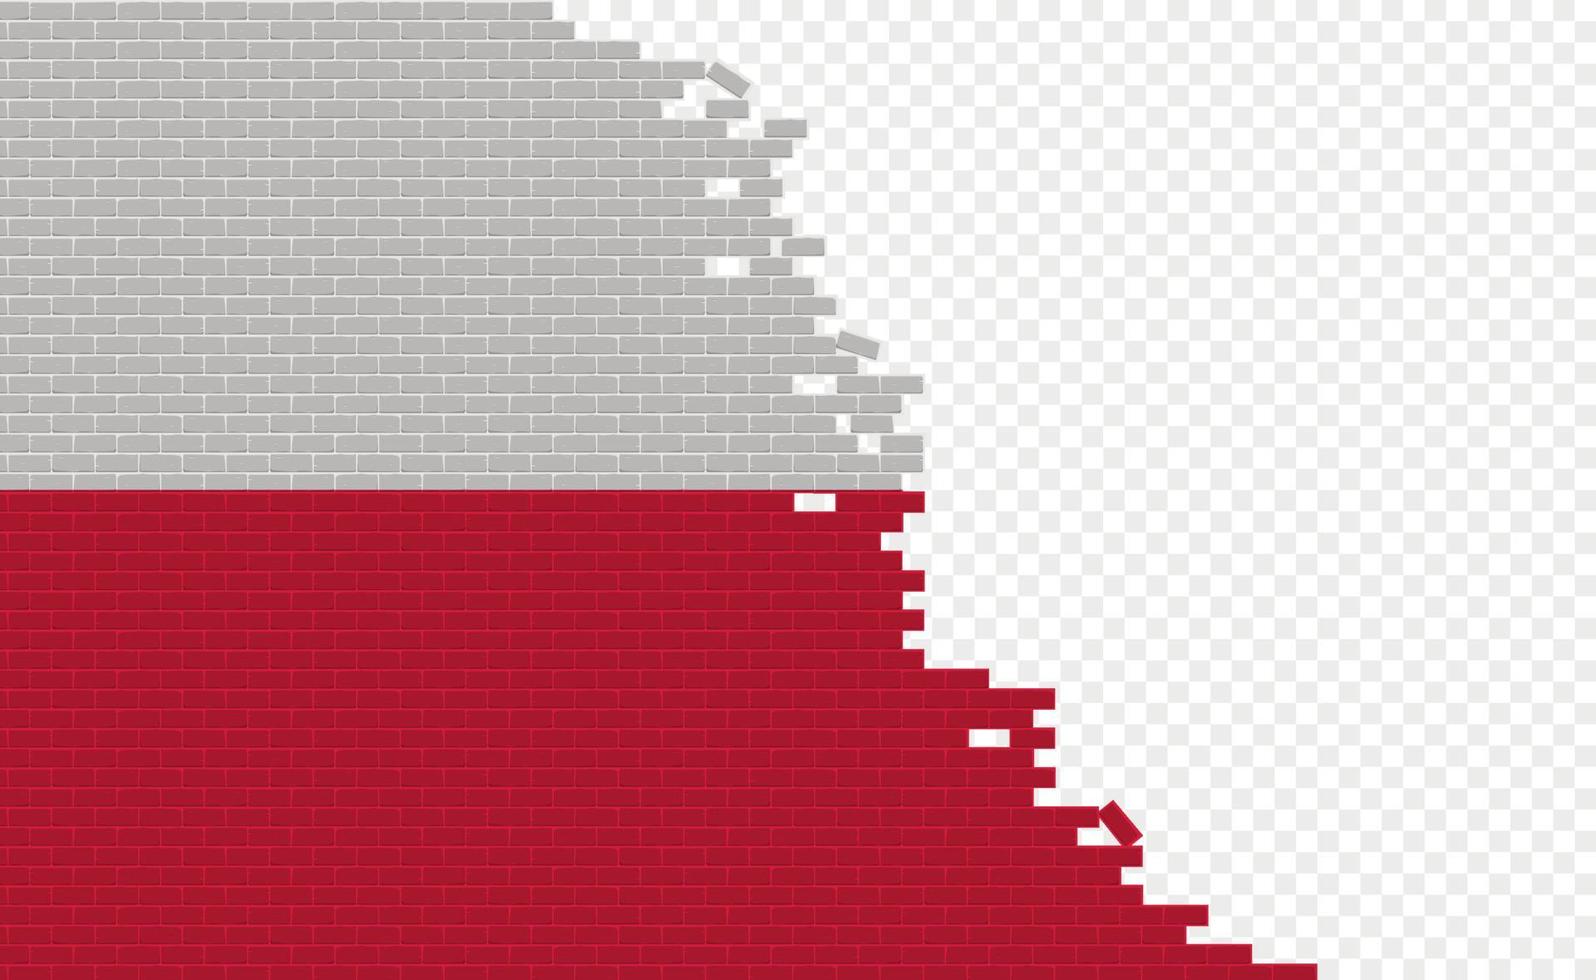 drapeau de la pologne sur le mur de briques cassées. champ de drapeau vide d'un autre pays. comparaison de pays. édition facile et vecteur en groupes.